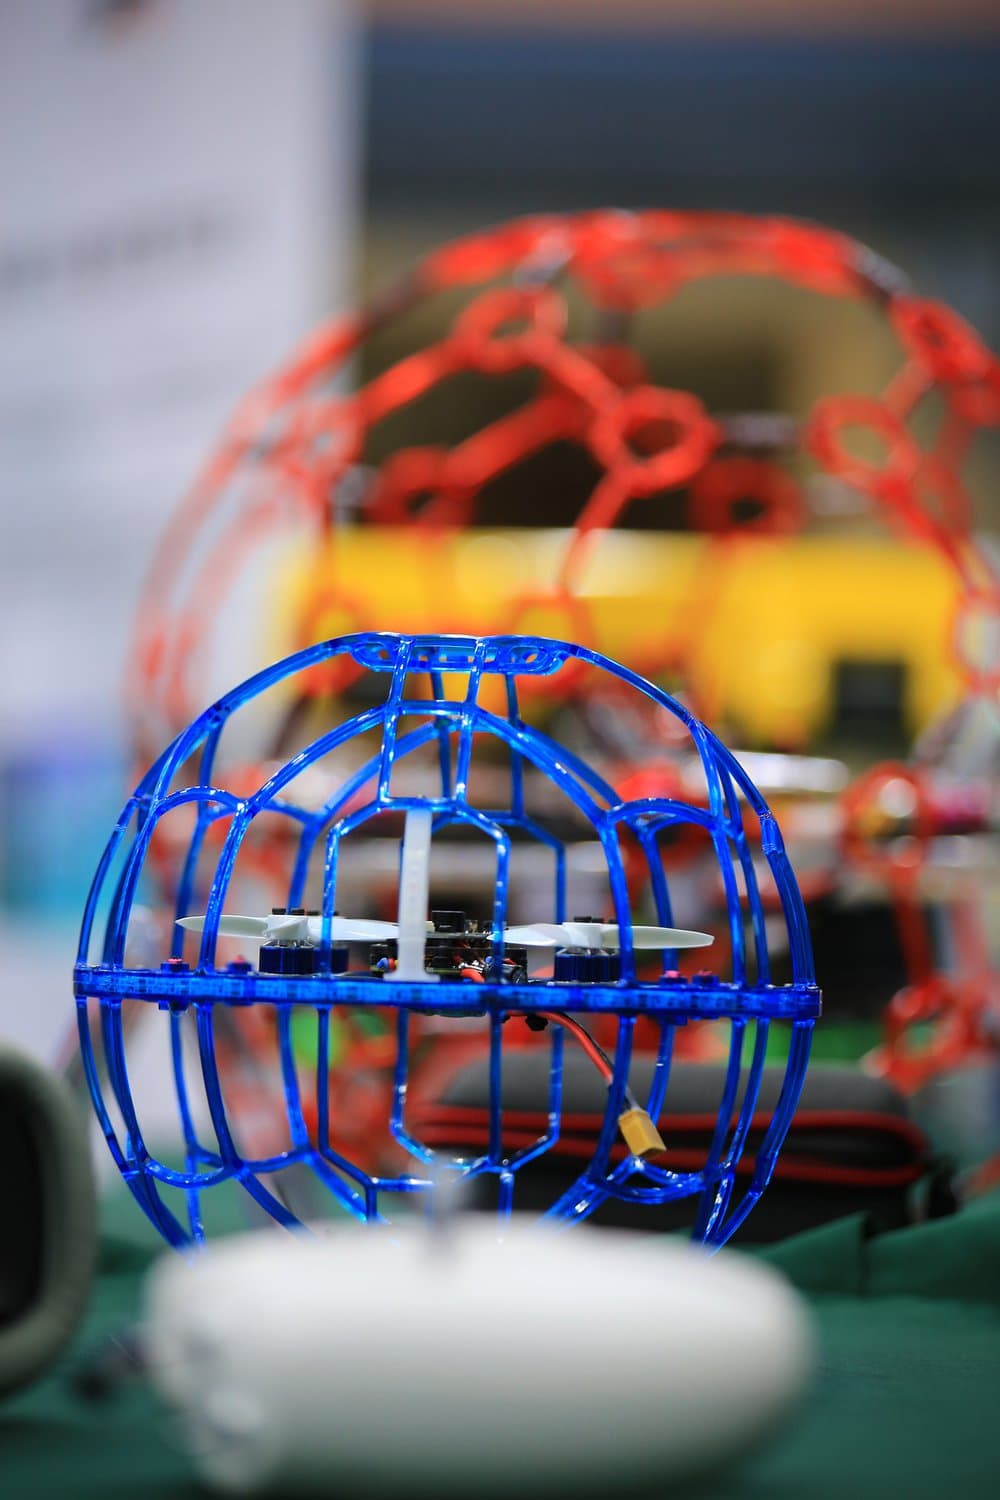 Eine kleine Flugdrohne in einem blauen, runden Käfig, die als Drohnenball beim Drohnen-Fußball eingesetzt wird.